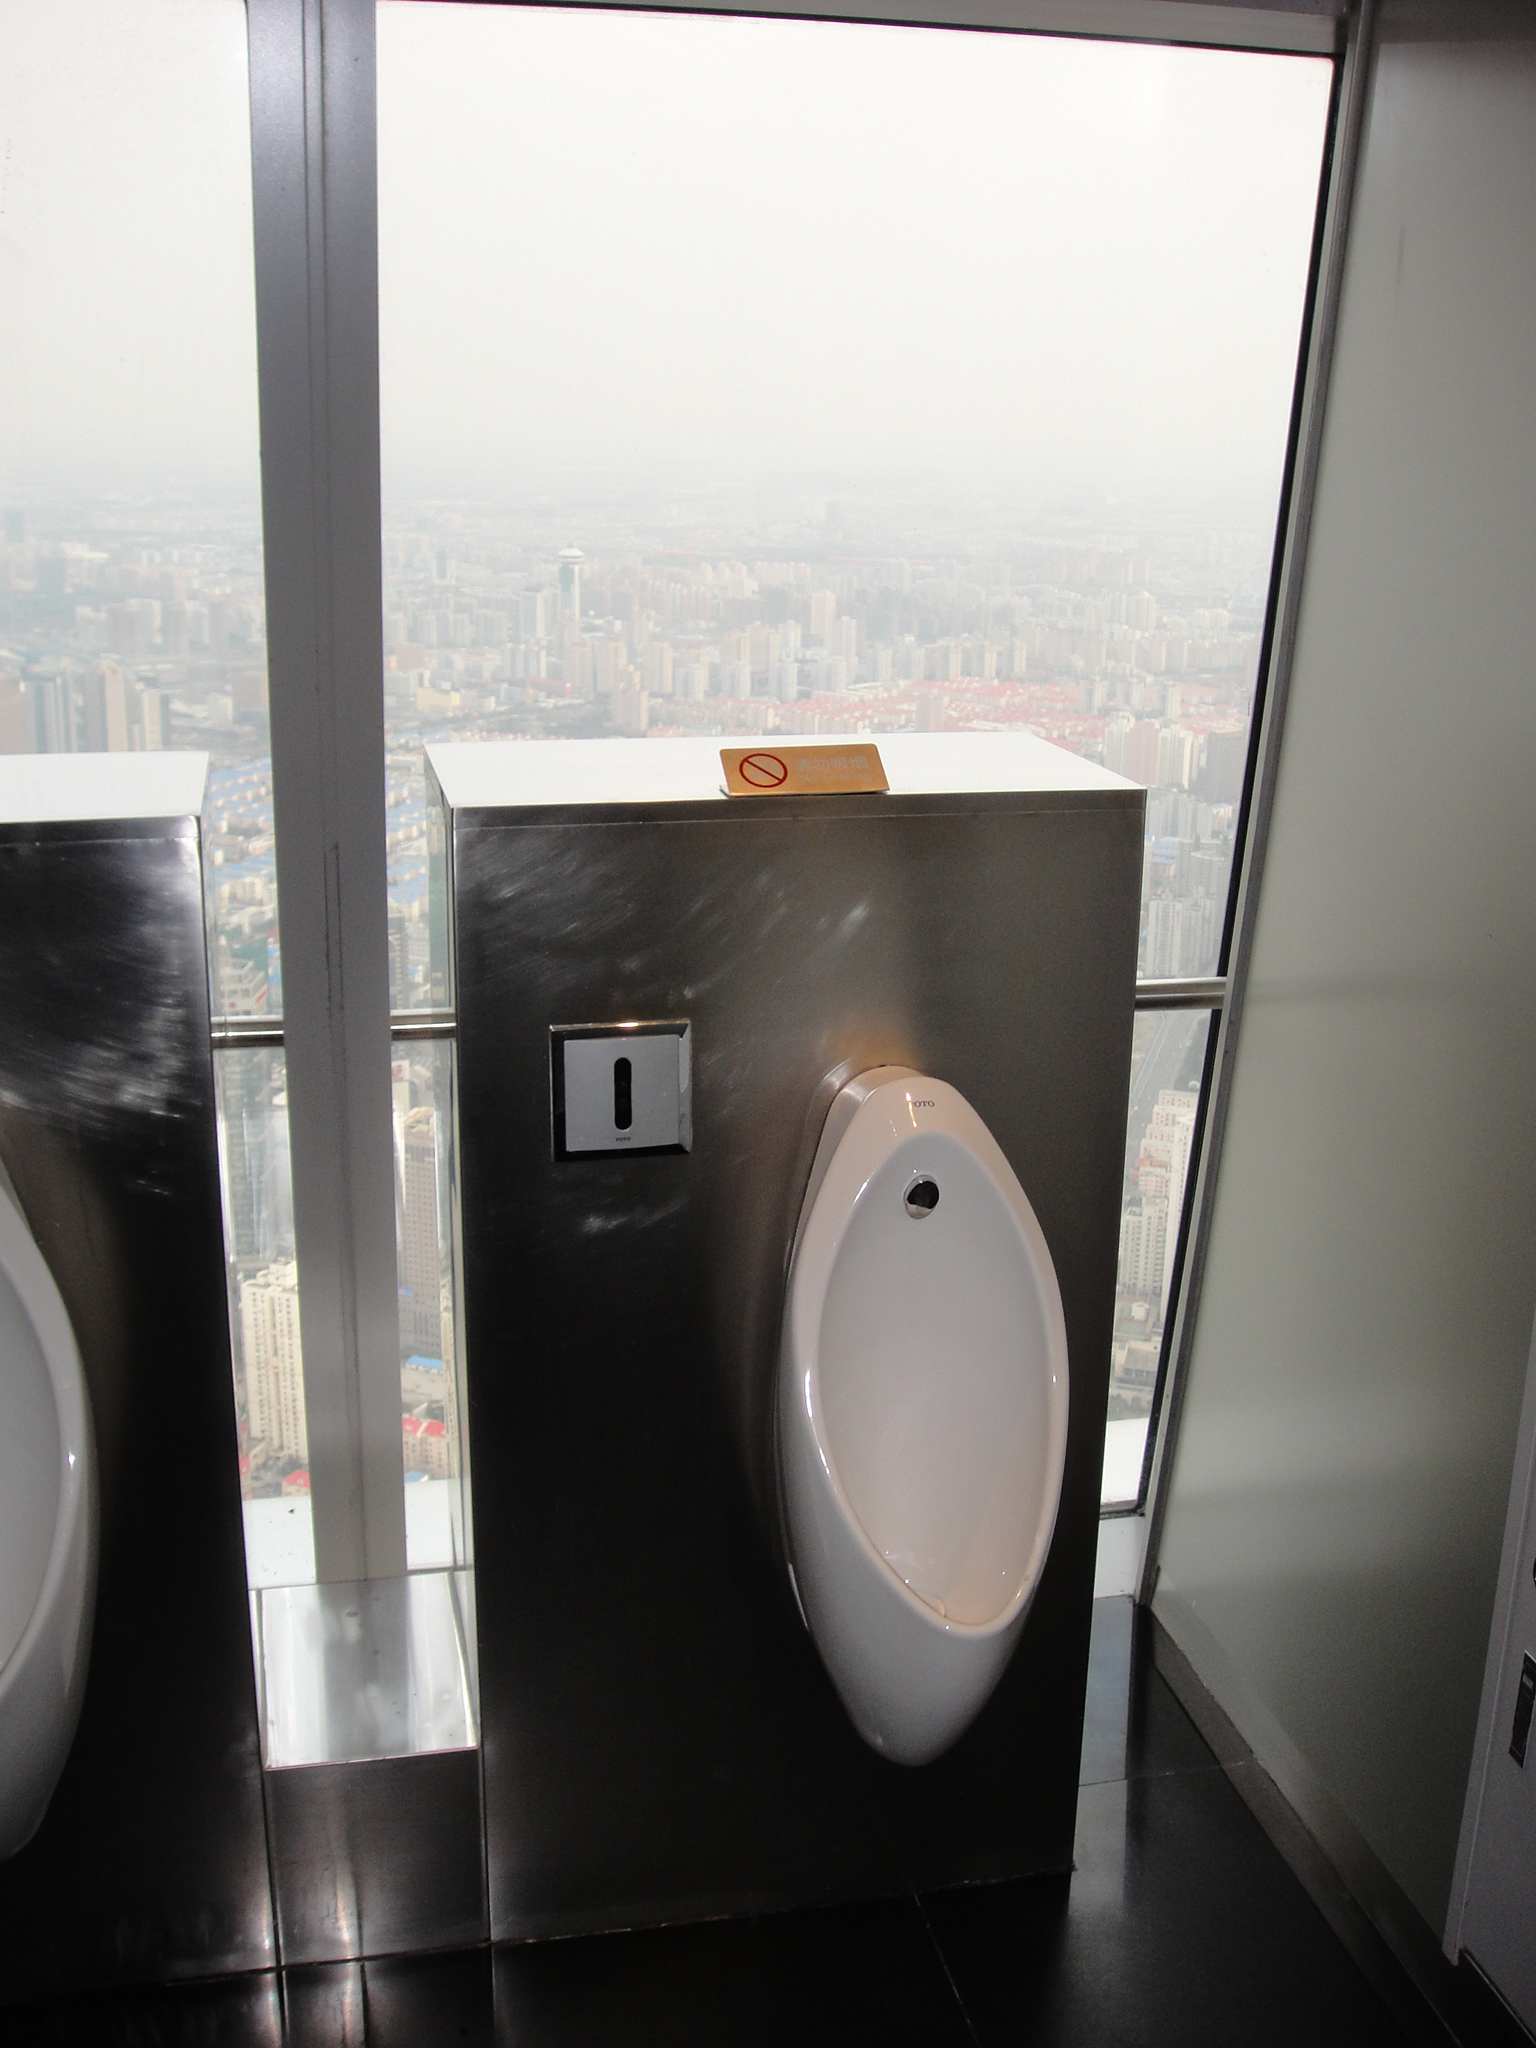 上海ヒルズ トイレ94F展望台 上海ヒルズ100階展望台＋上海の見どころぎっしりツアー(9001700